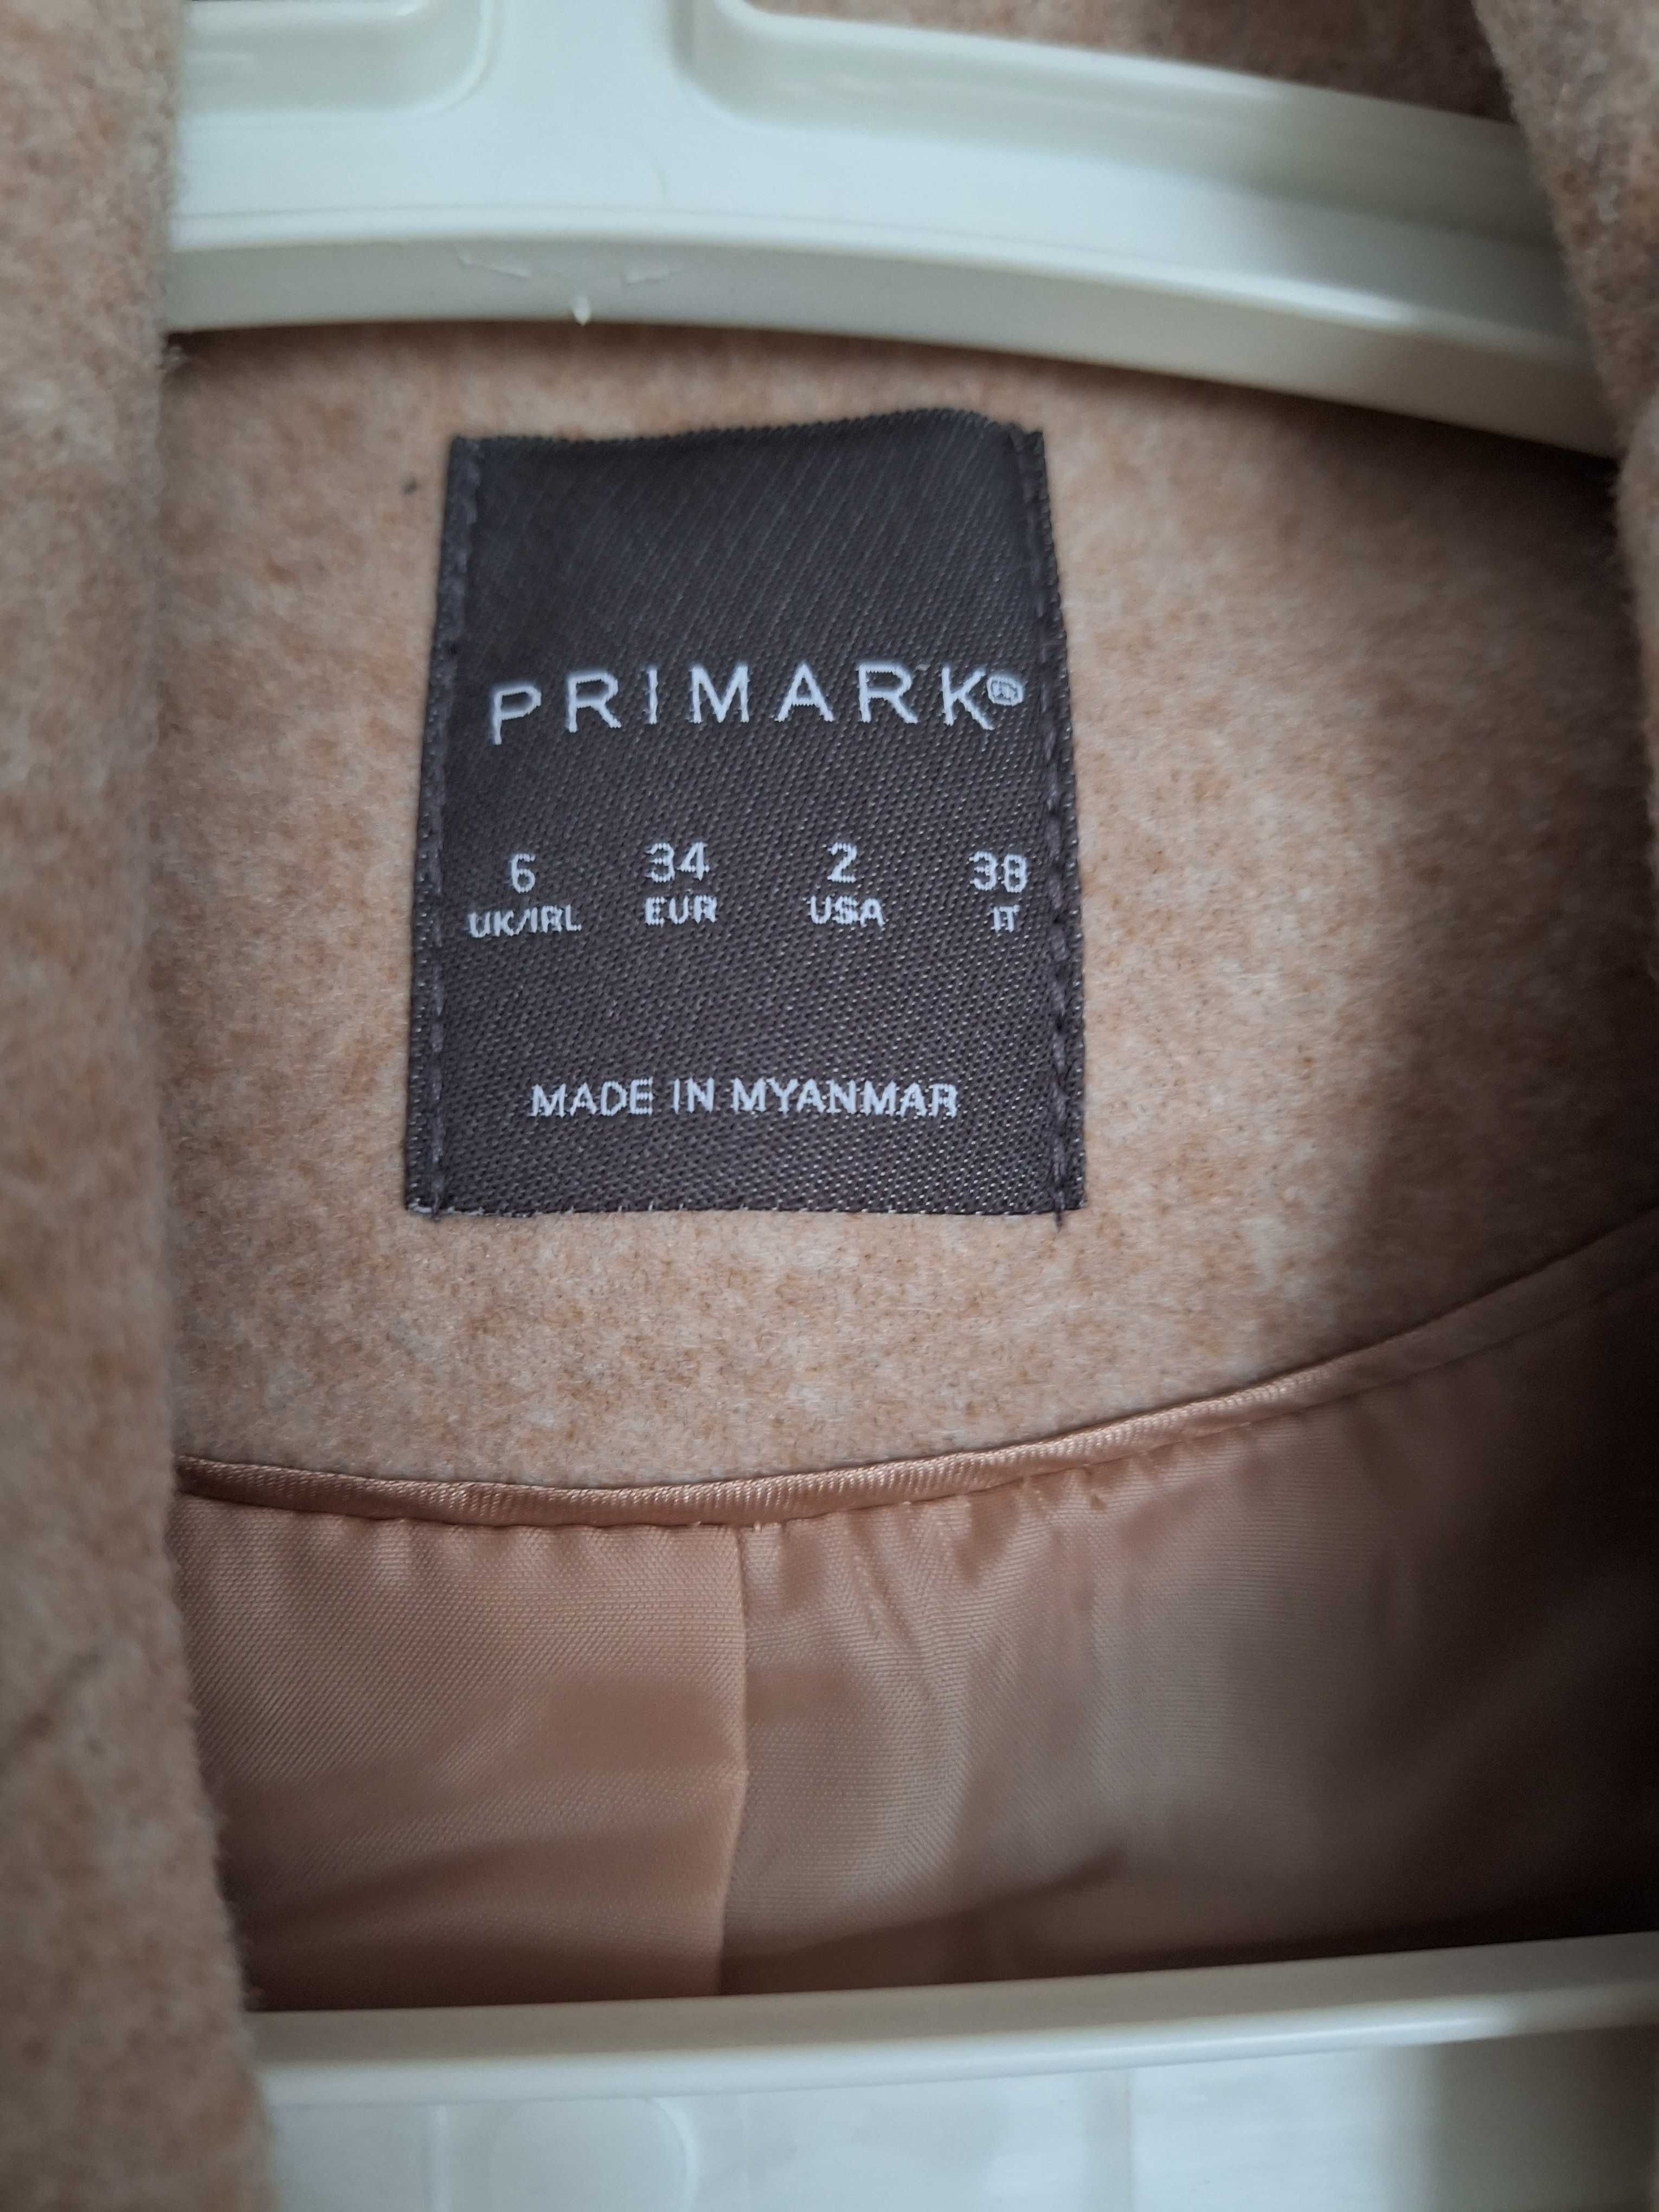 Sprzedam nowy plaszczyk firmy PRIMARK